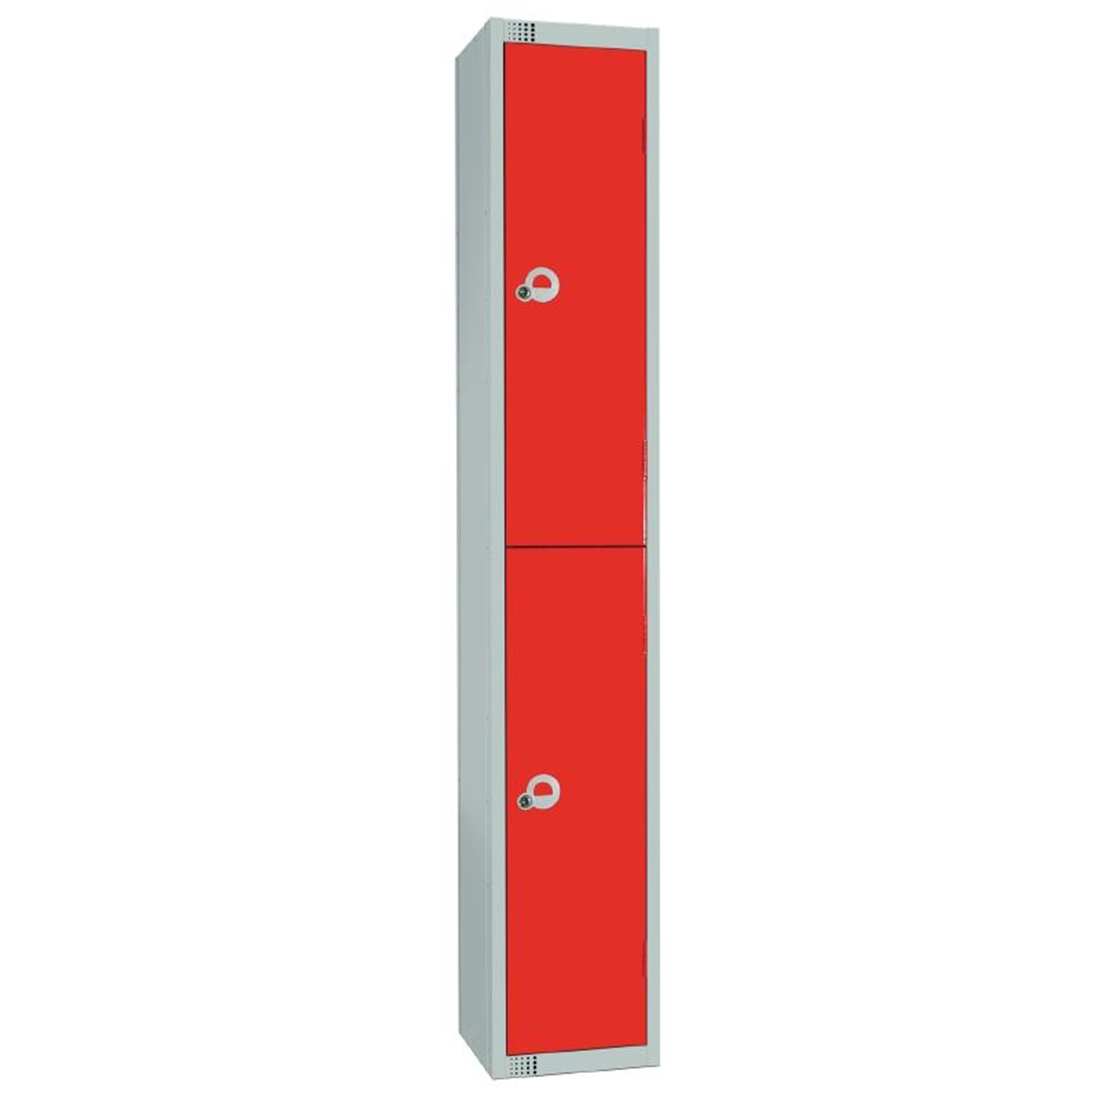 Elite Double Door Manual Combination Locker Locker Red with Sloping Top